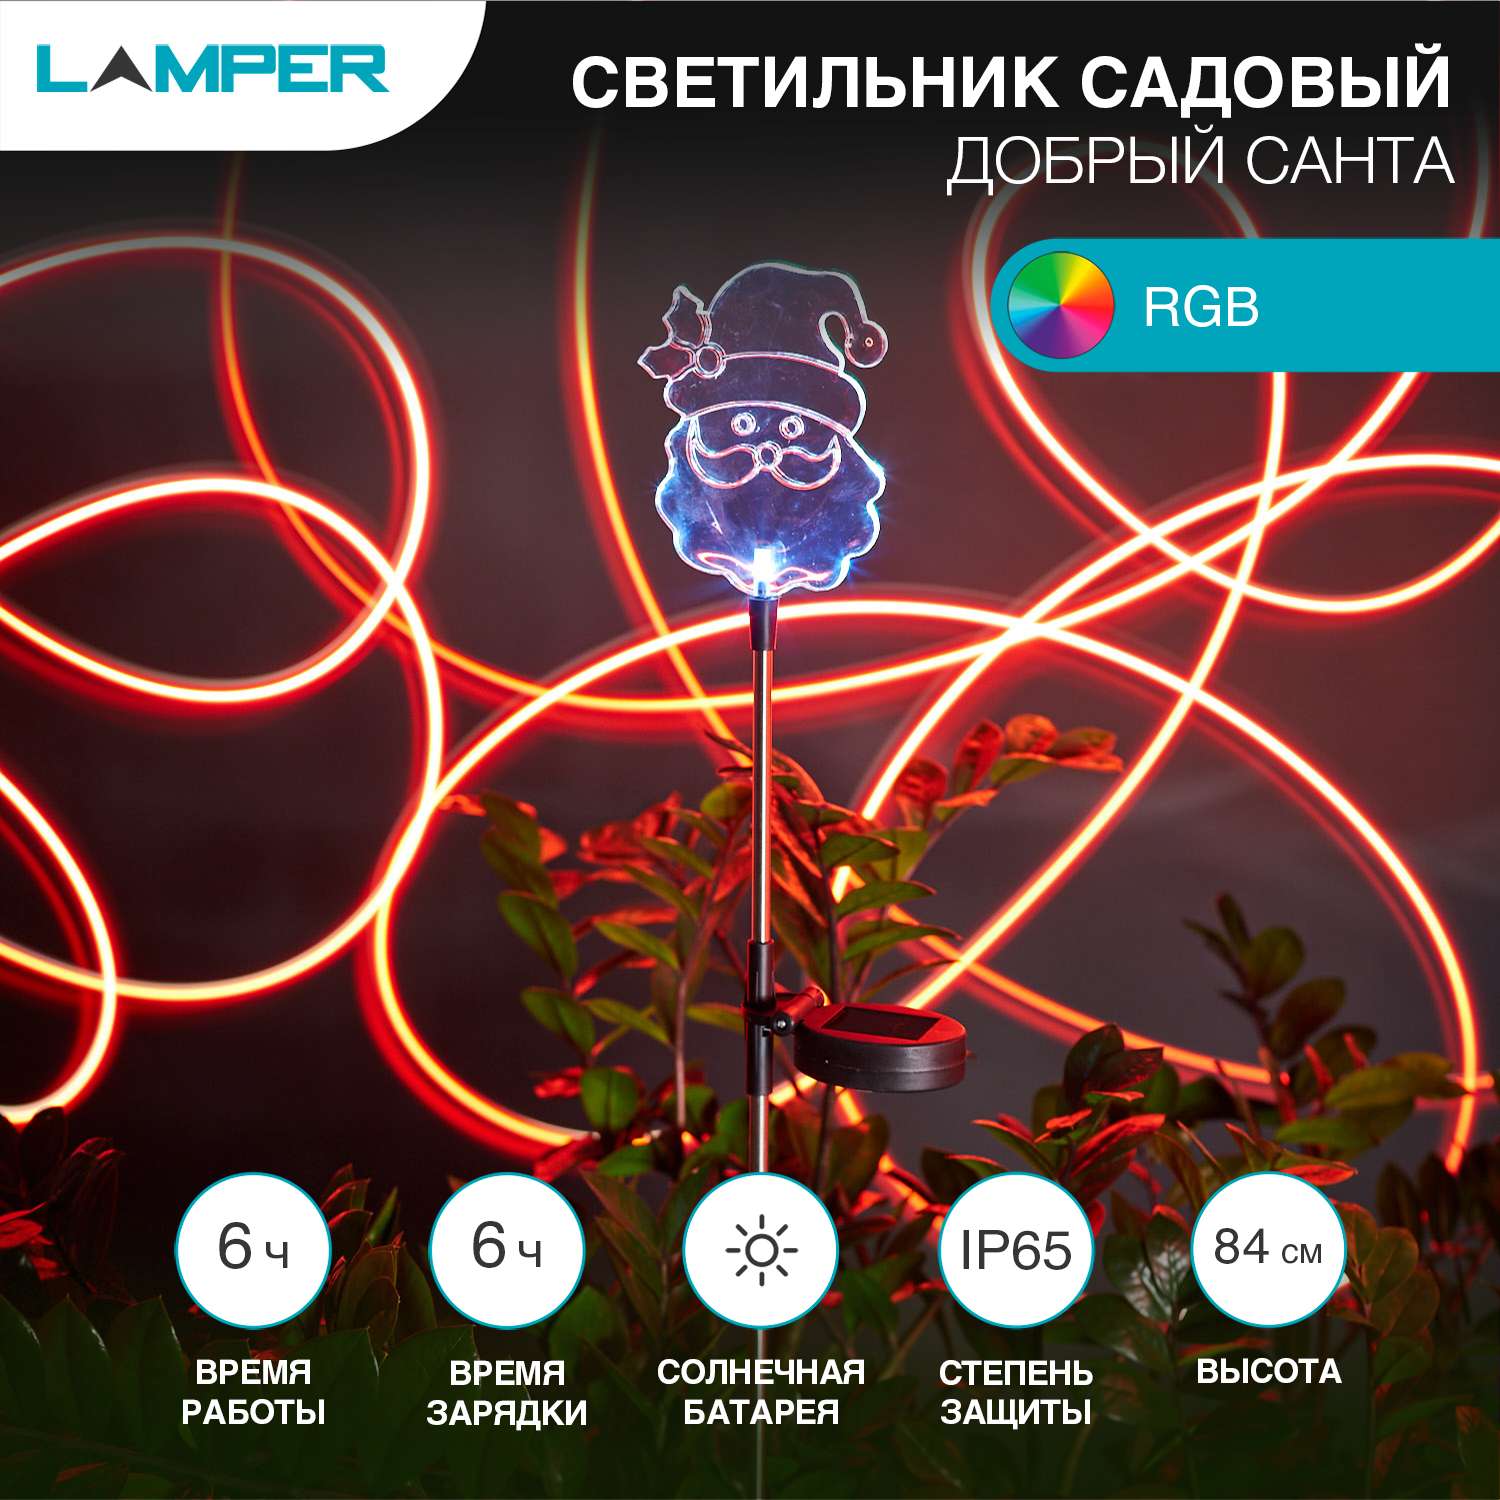 Светильник садовый LAMPER Добрый Санта 84 см эффект смены цветов RGB с солнечной панелью и аккумулятором - фото 2